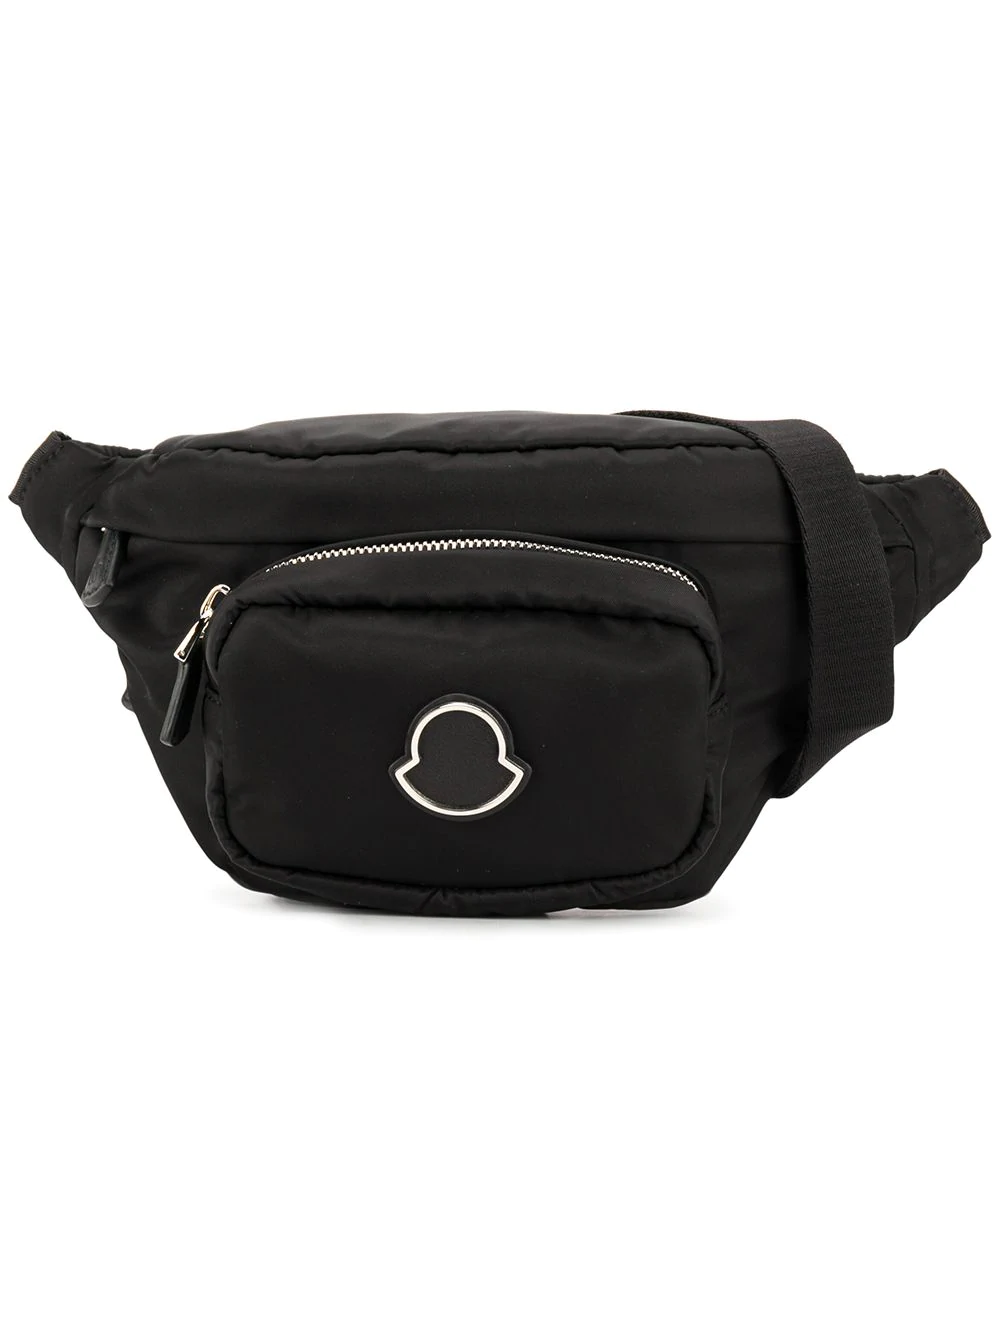 Moncler Felicie Bum Bag - Black | ModeSens